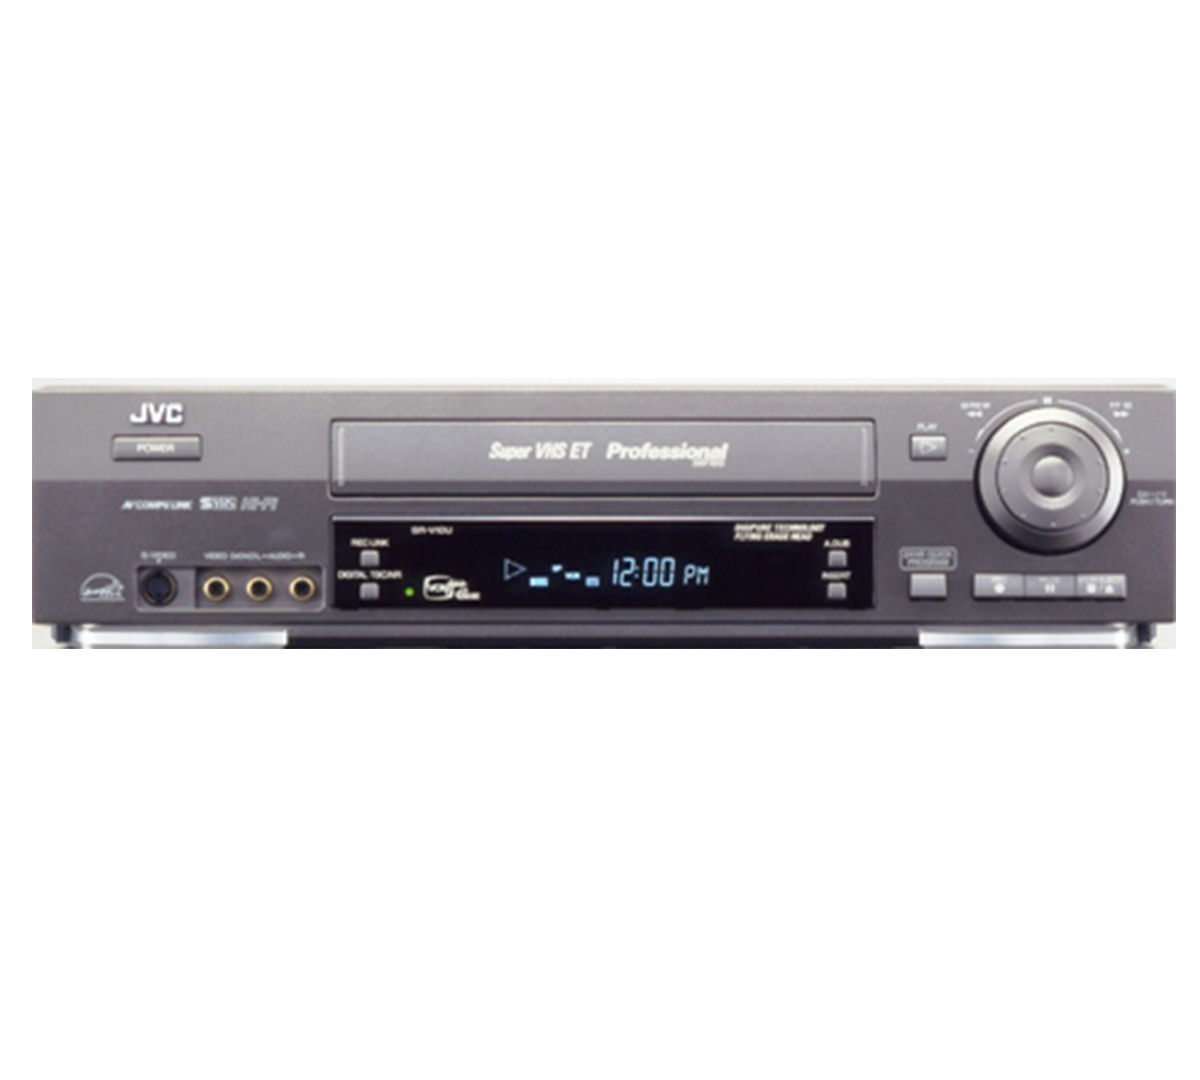 JVC S-VHS VCR - Hi-Fi - JVC SR-V10U – Southern Advantage Company